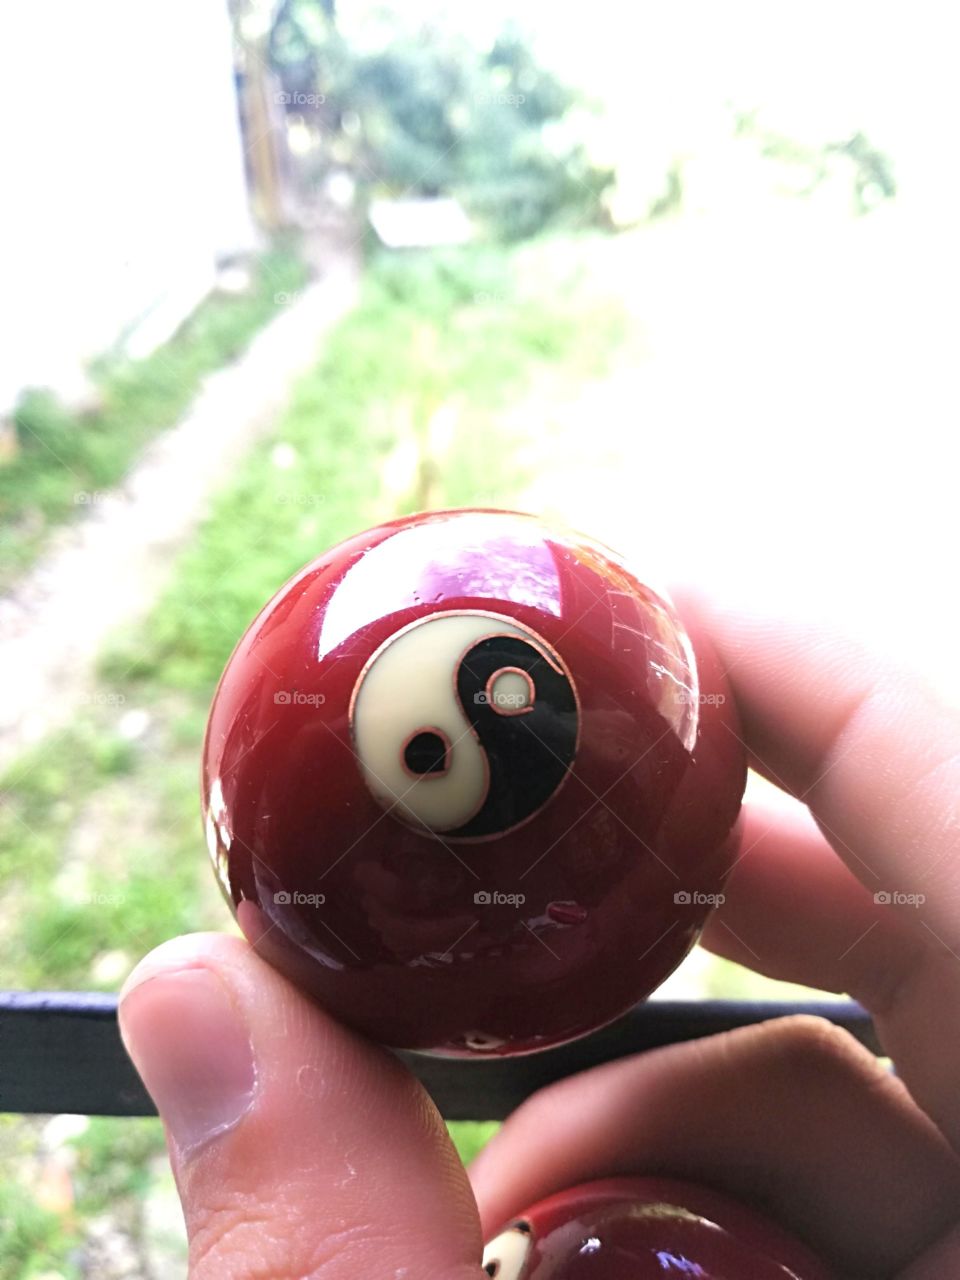 Bola yin y yang, bola de equilibrio antiestrés en su color original reflejando el cielo en ella.